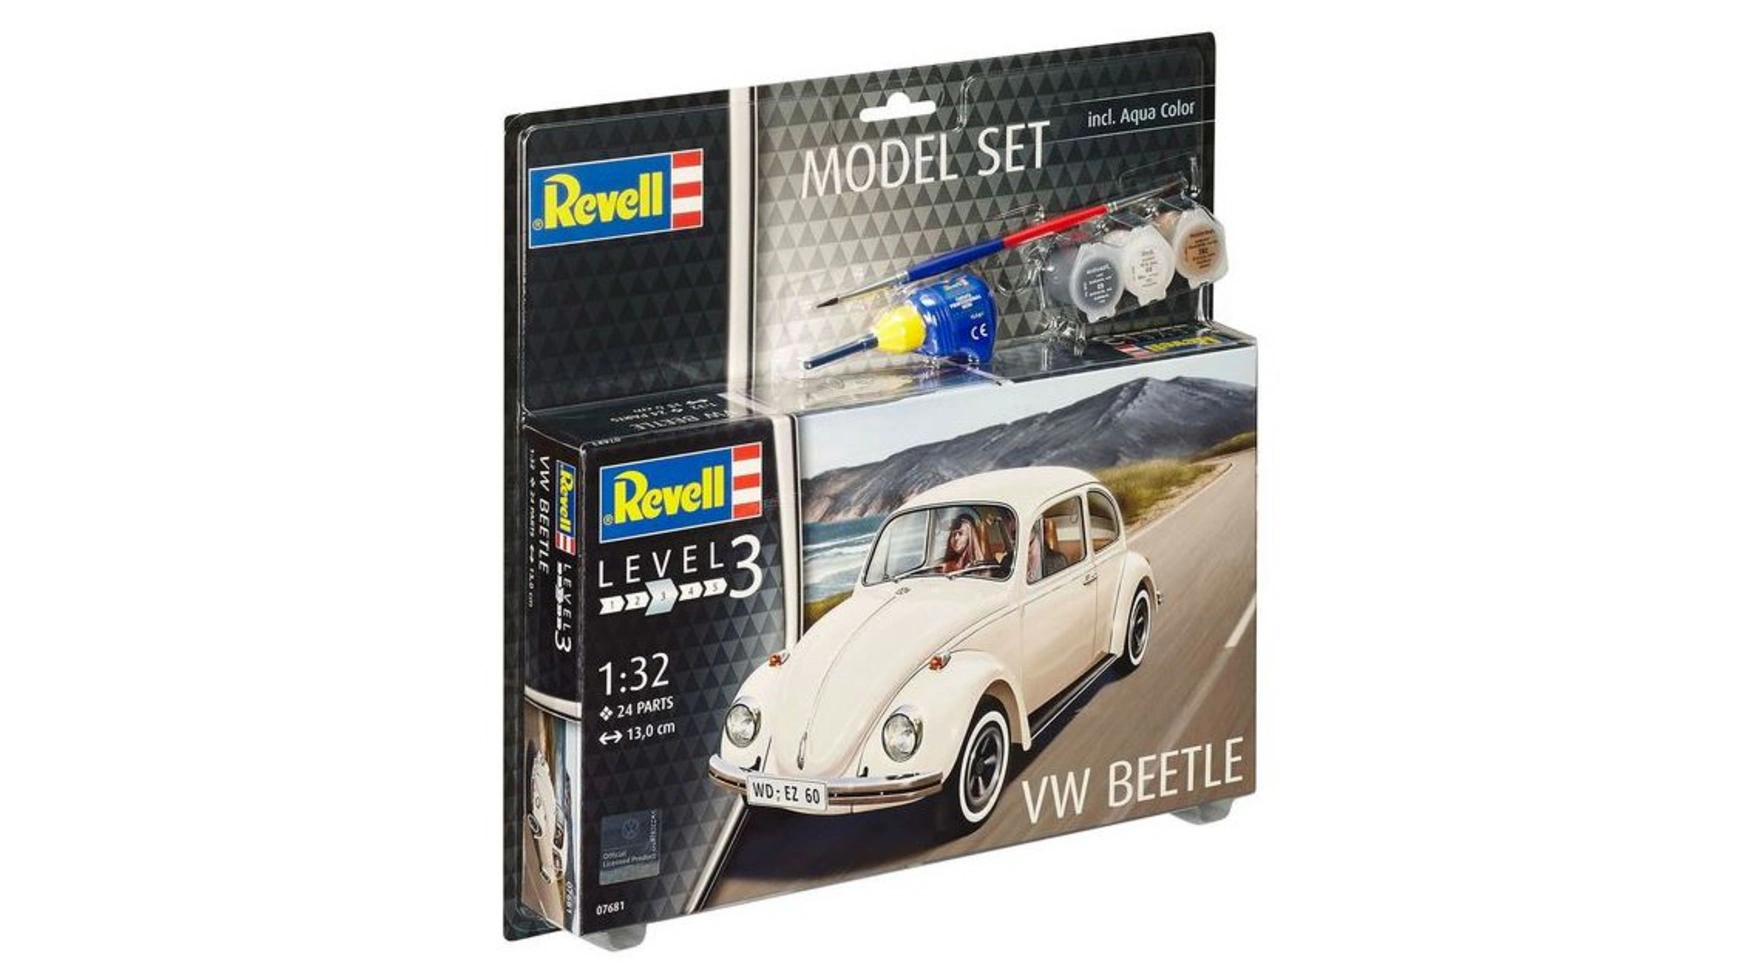 Revell Набор моделей VW Beetle цена и фото